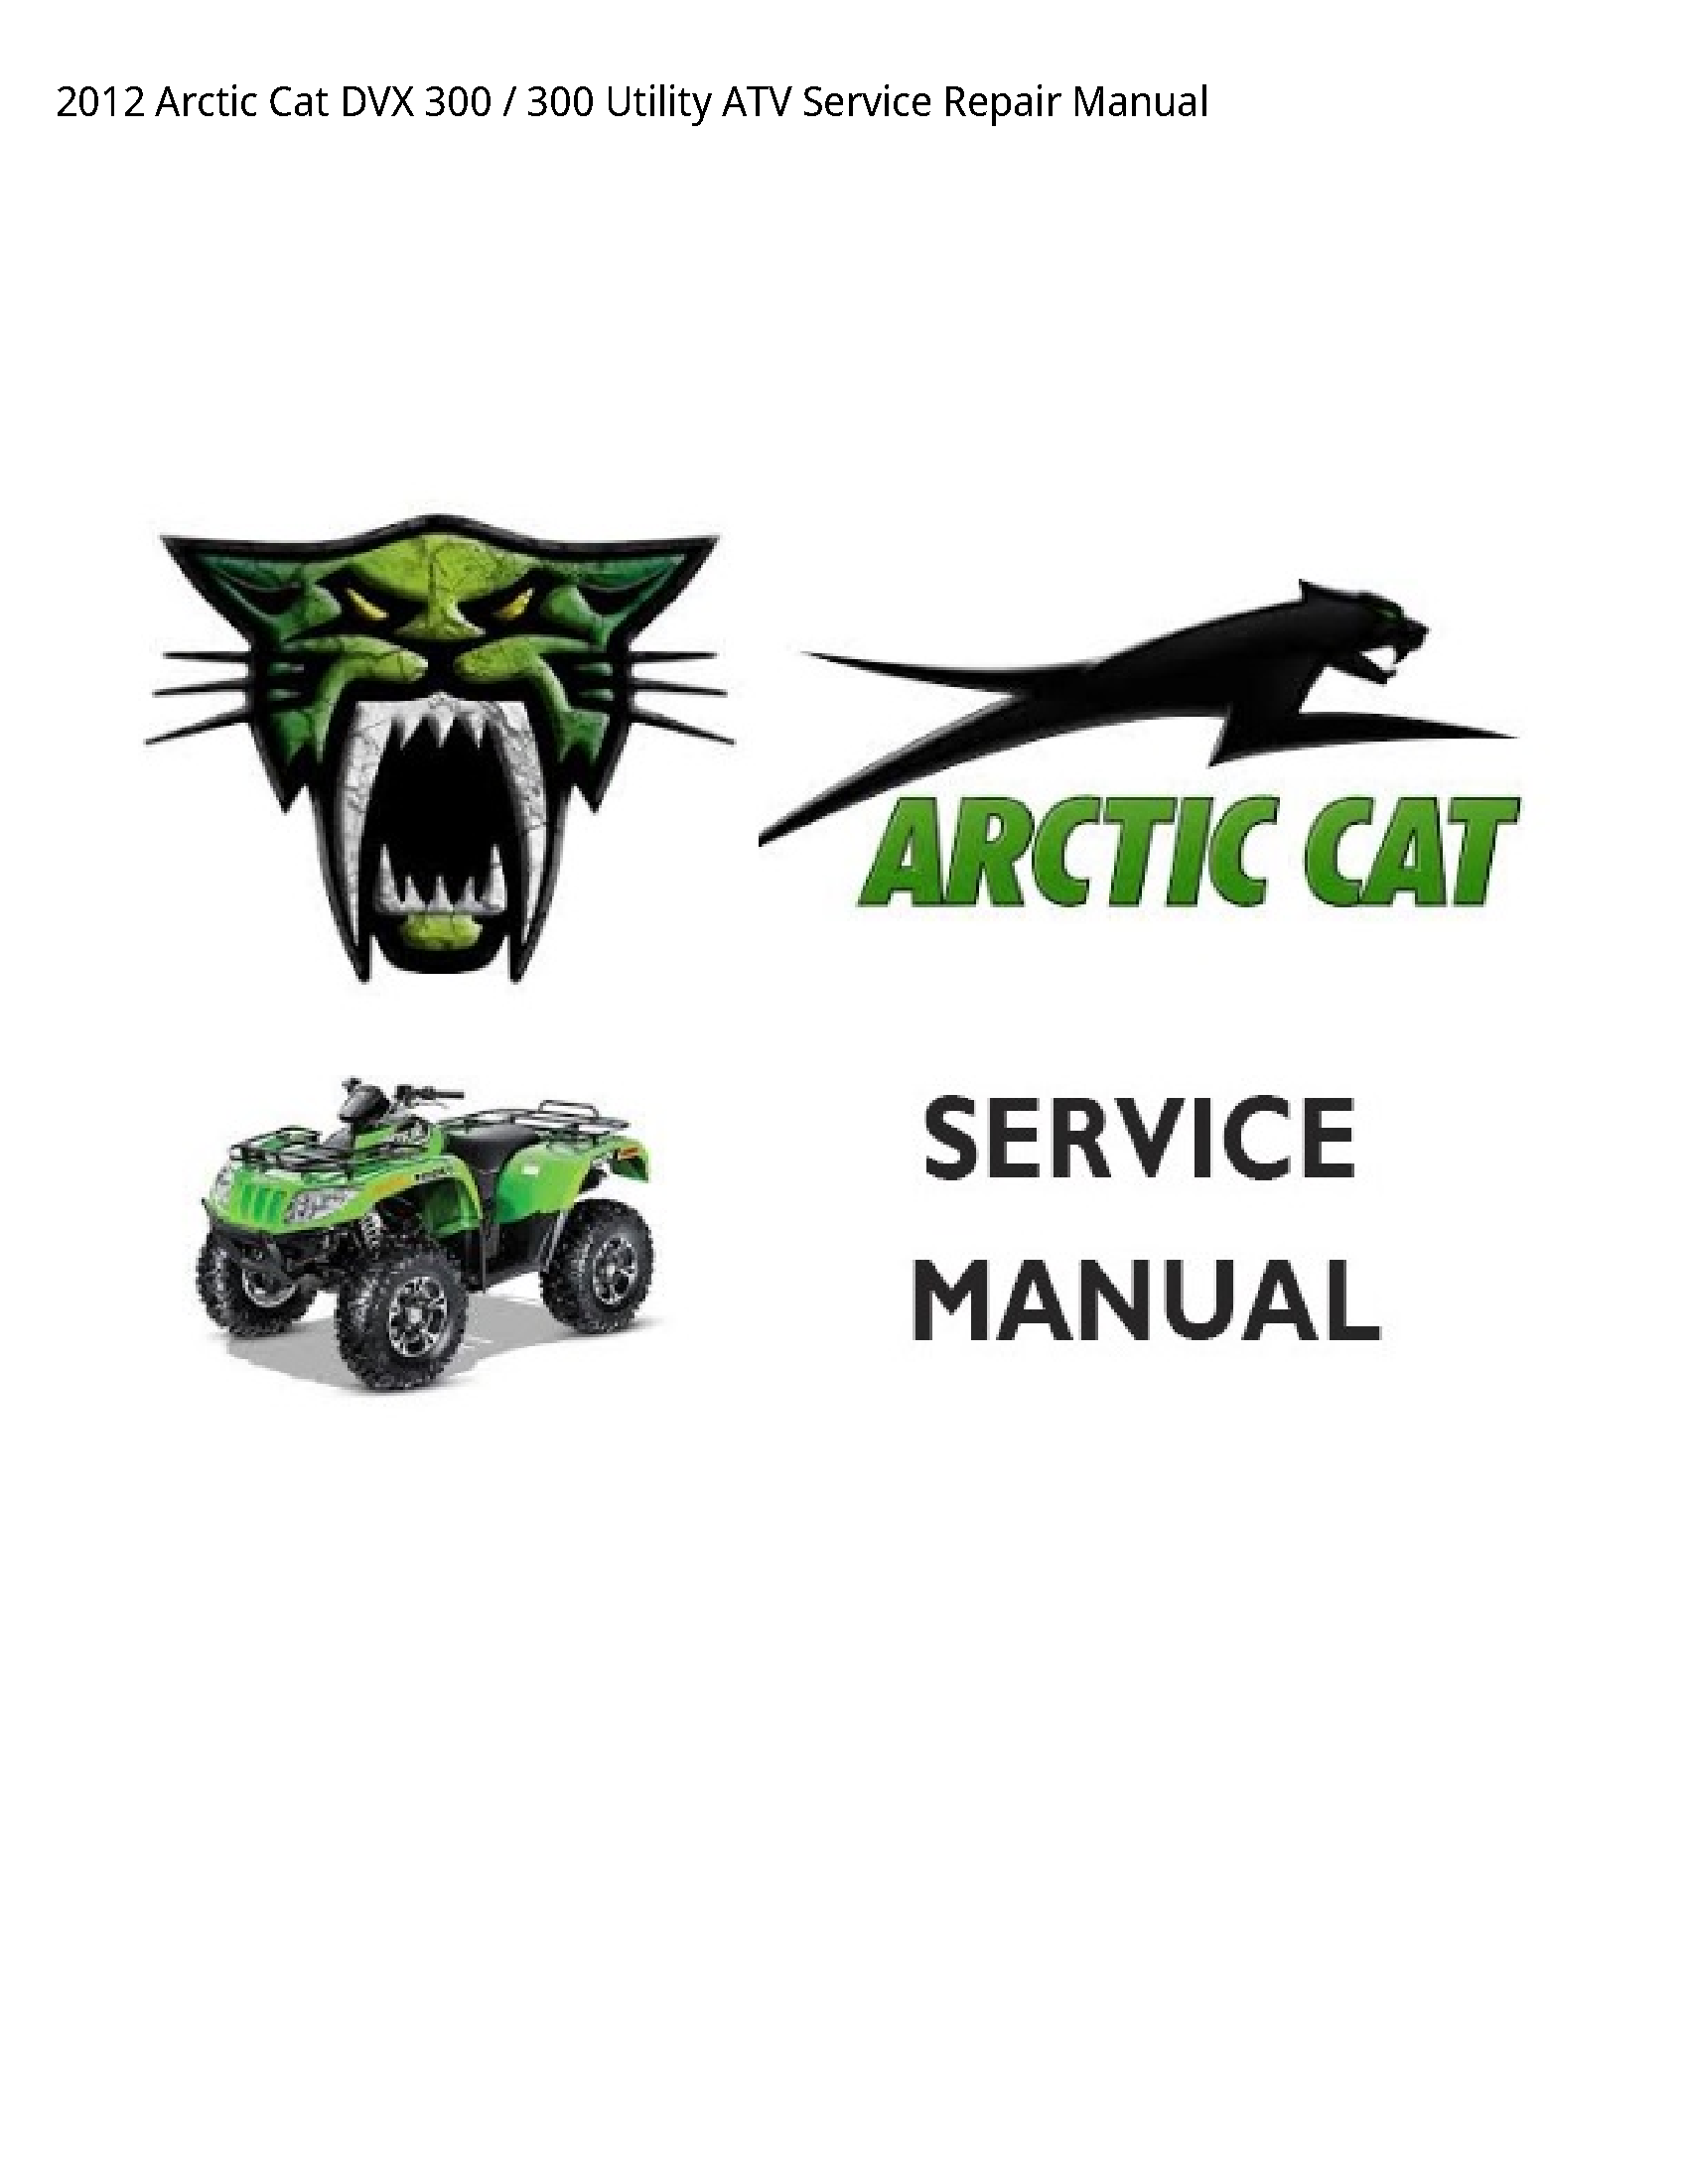 Arctic Cat 300 DVX Utility ATV manual